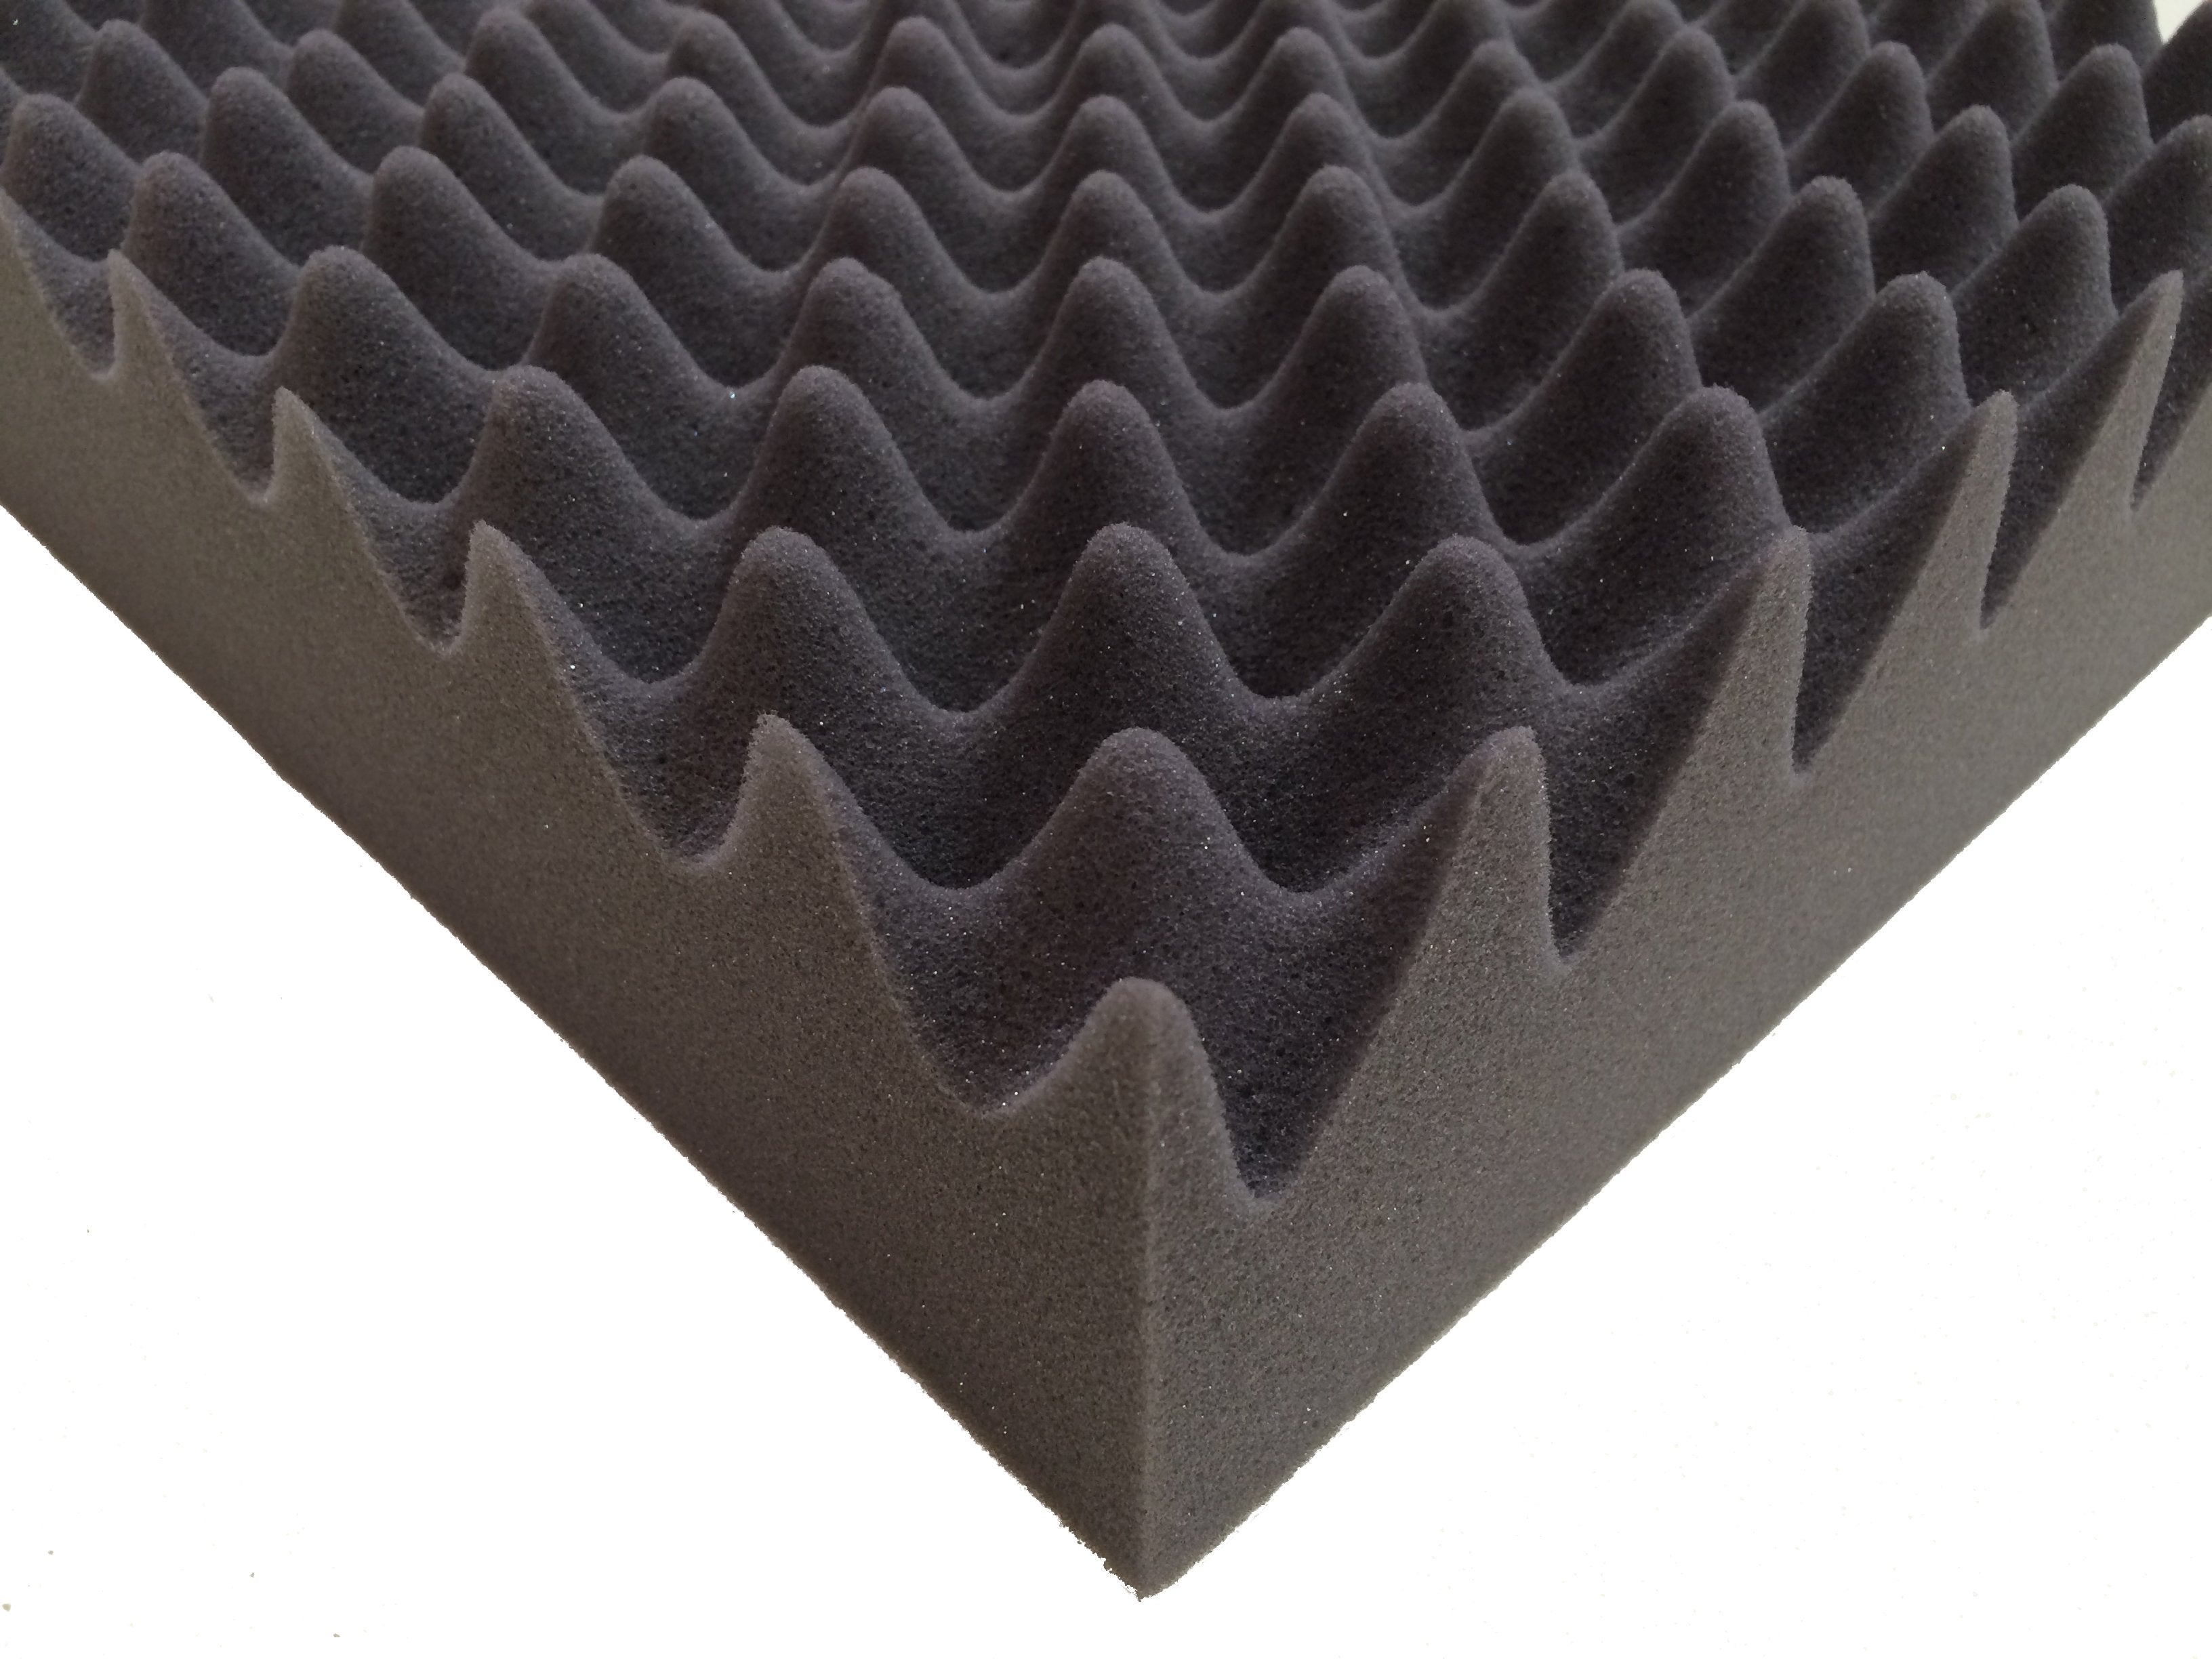 F.A.T. PRO 15" Acoustic Studio Foam Tile Kit - Advanced Acoustics